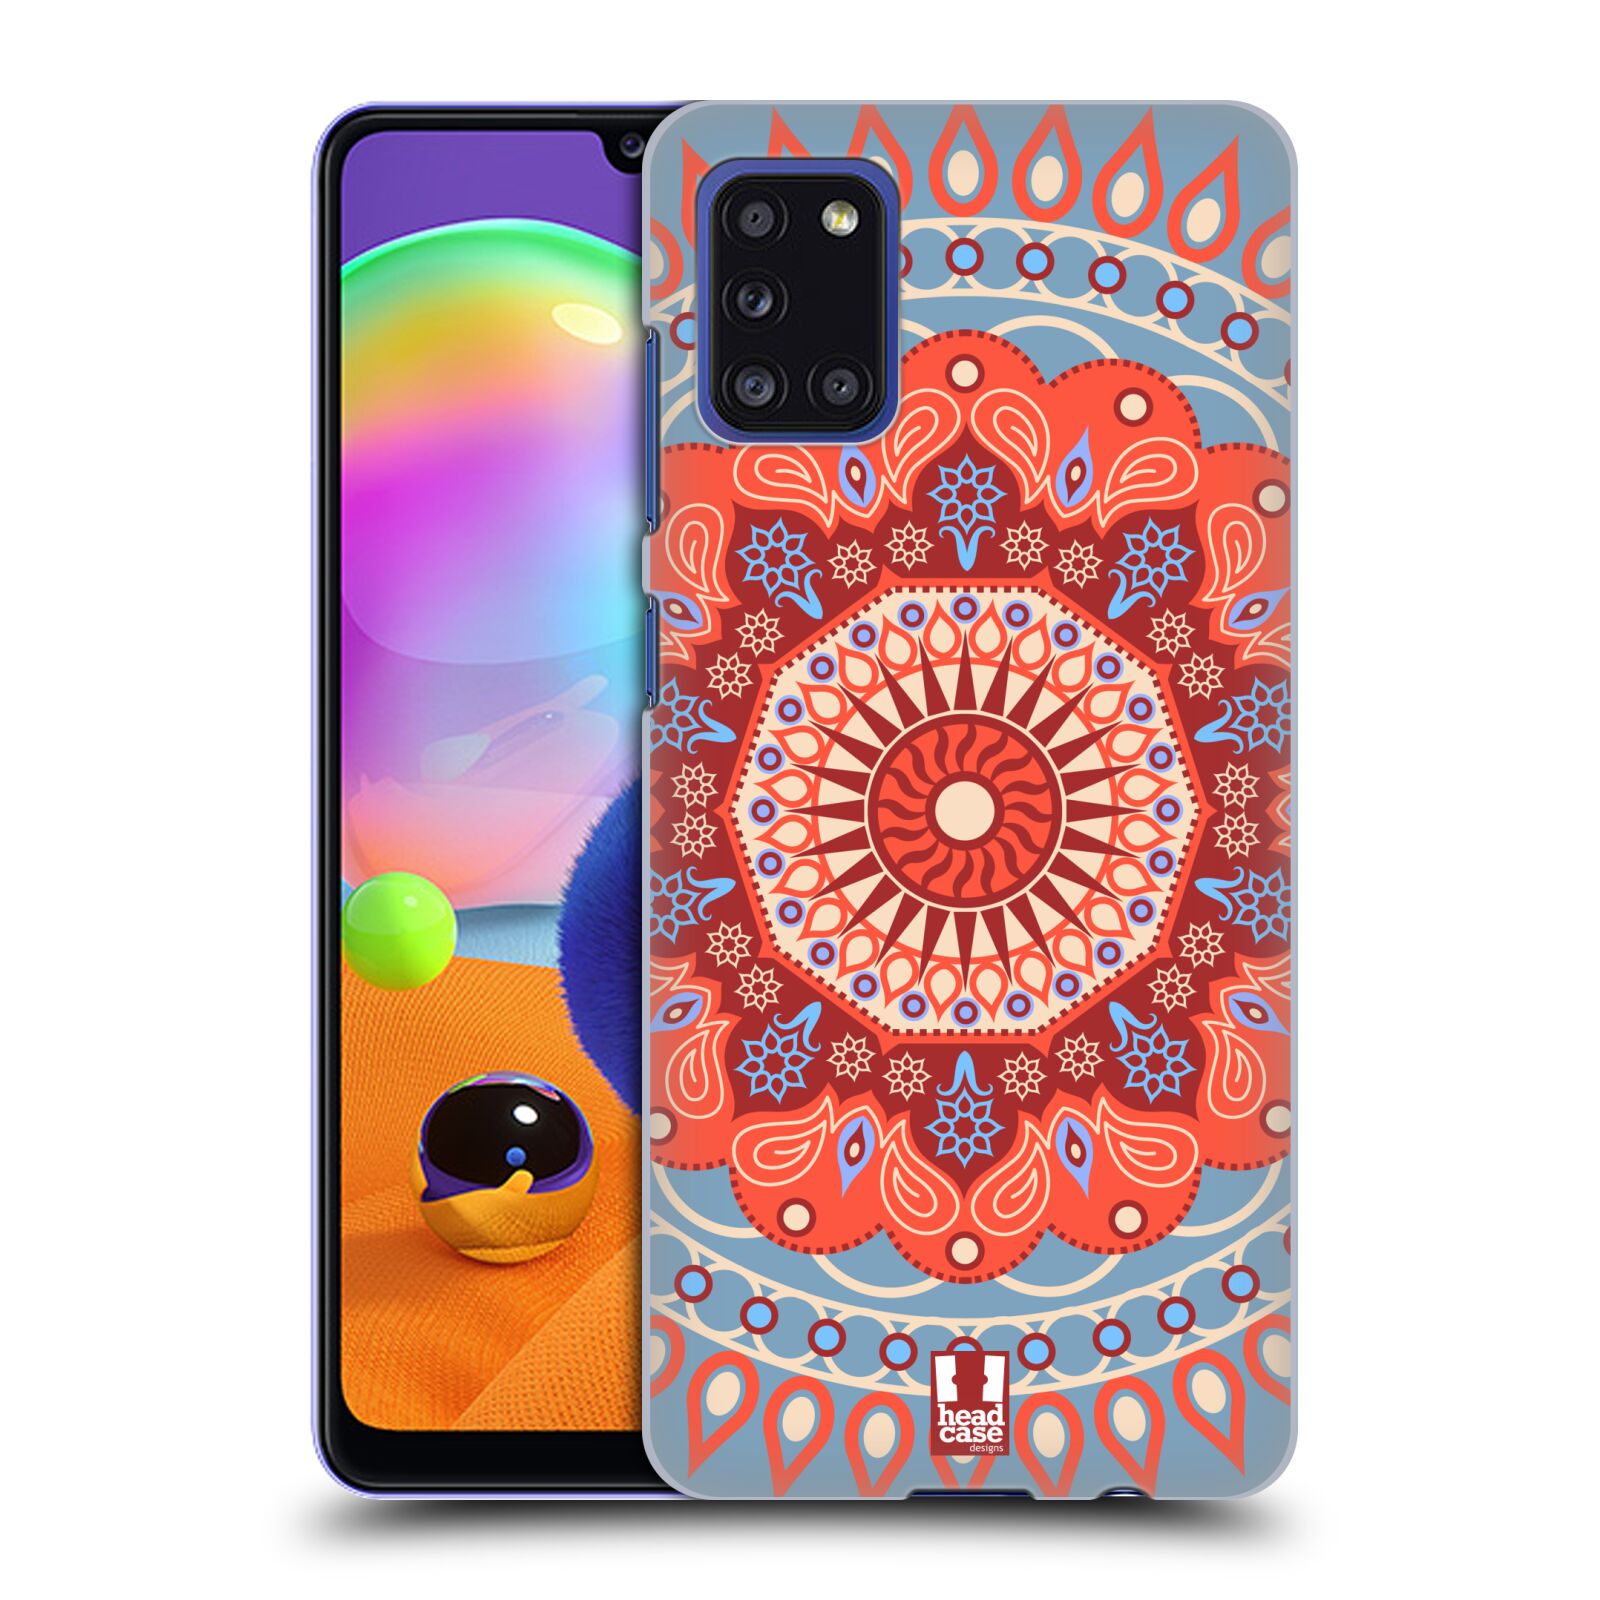 Zadní kryt na mobil Samsung Galaxy A31 vzor Indie Mandala slunce barevný motiv ČERVENÁ A MODRÁ